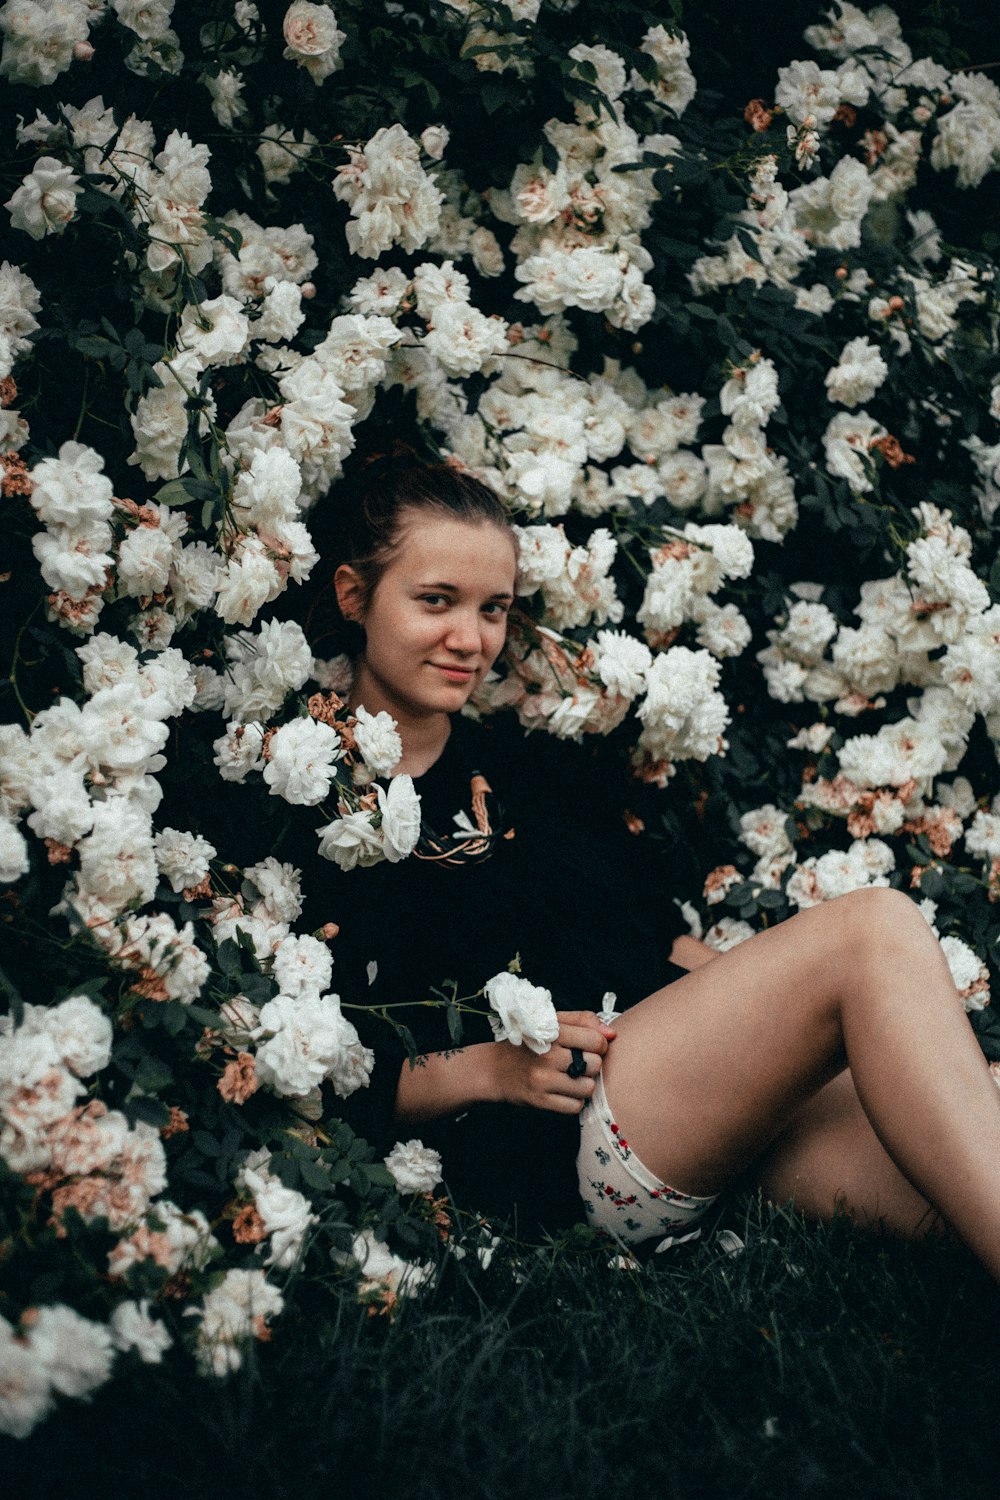 꽃으로 둘러싸인 풀밭에 앉아있는 여자